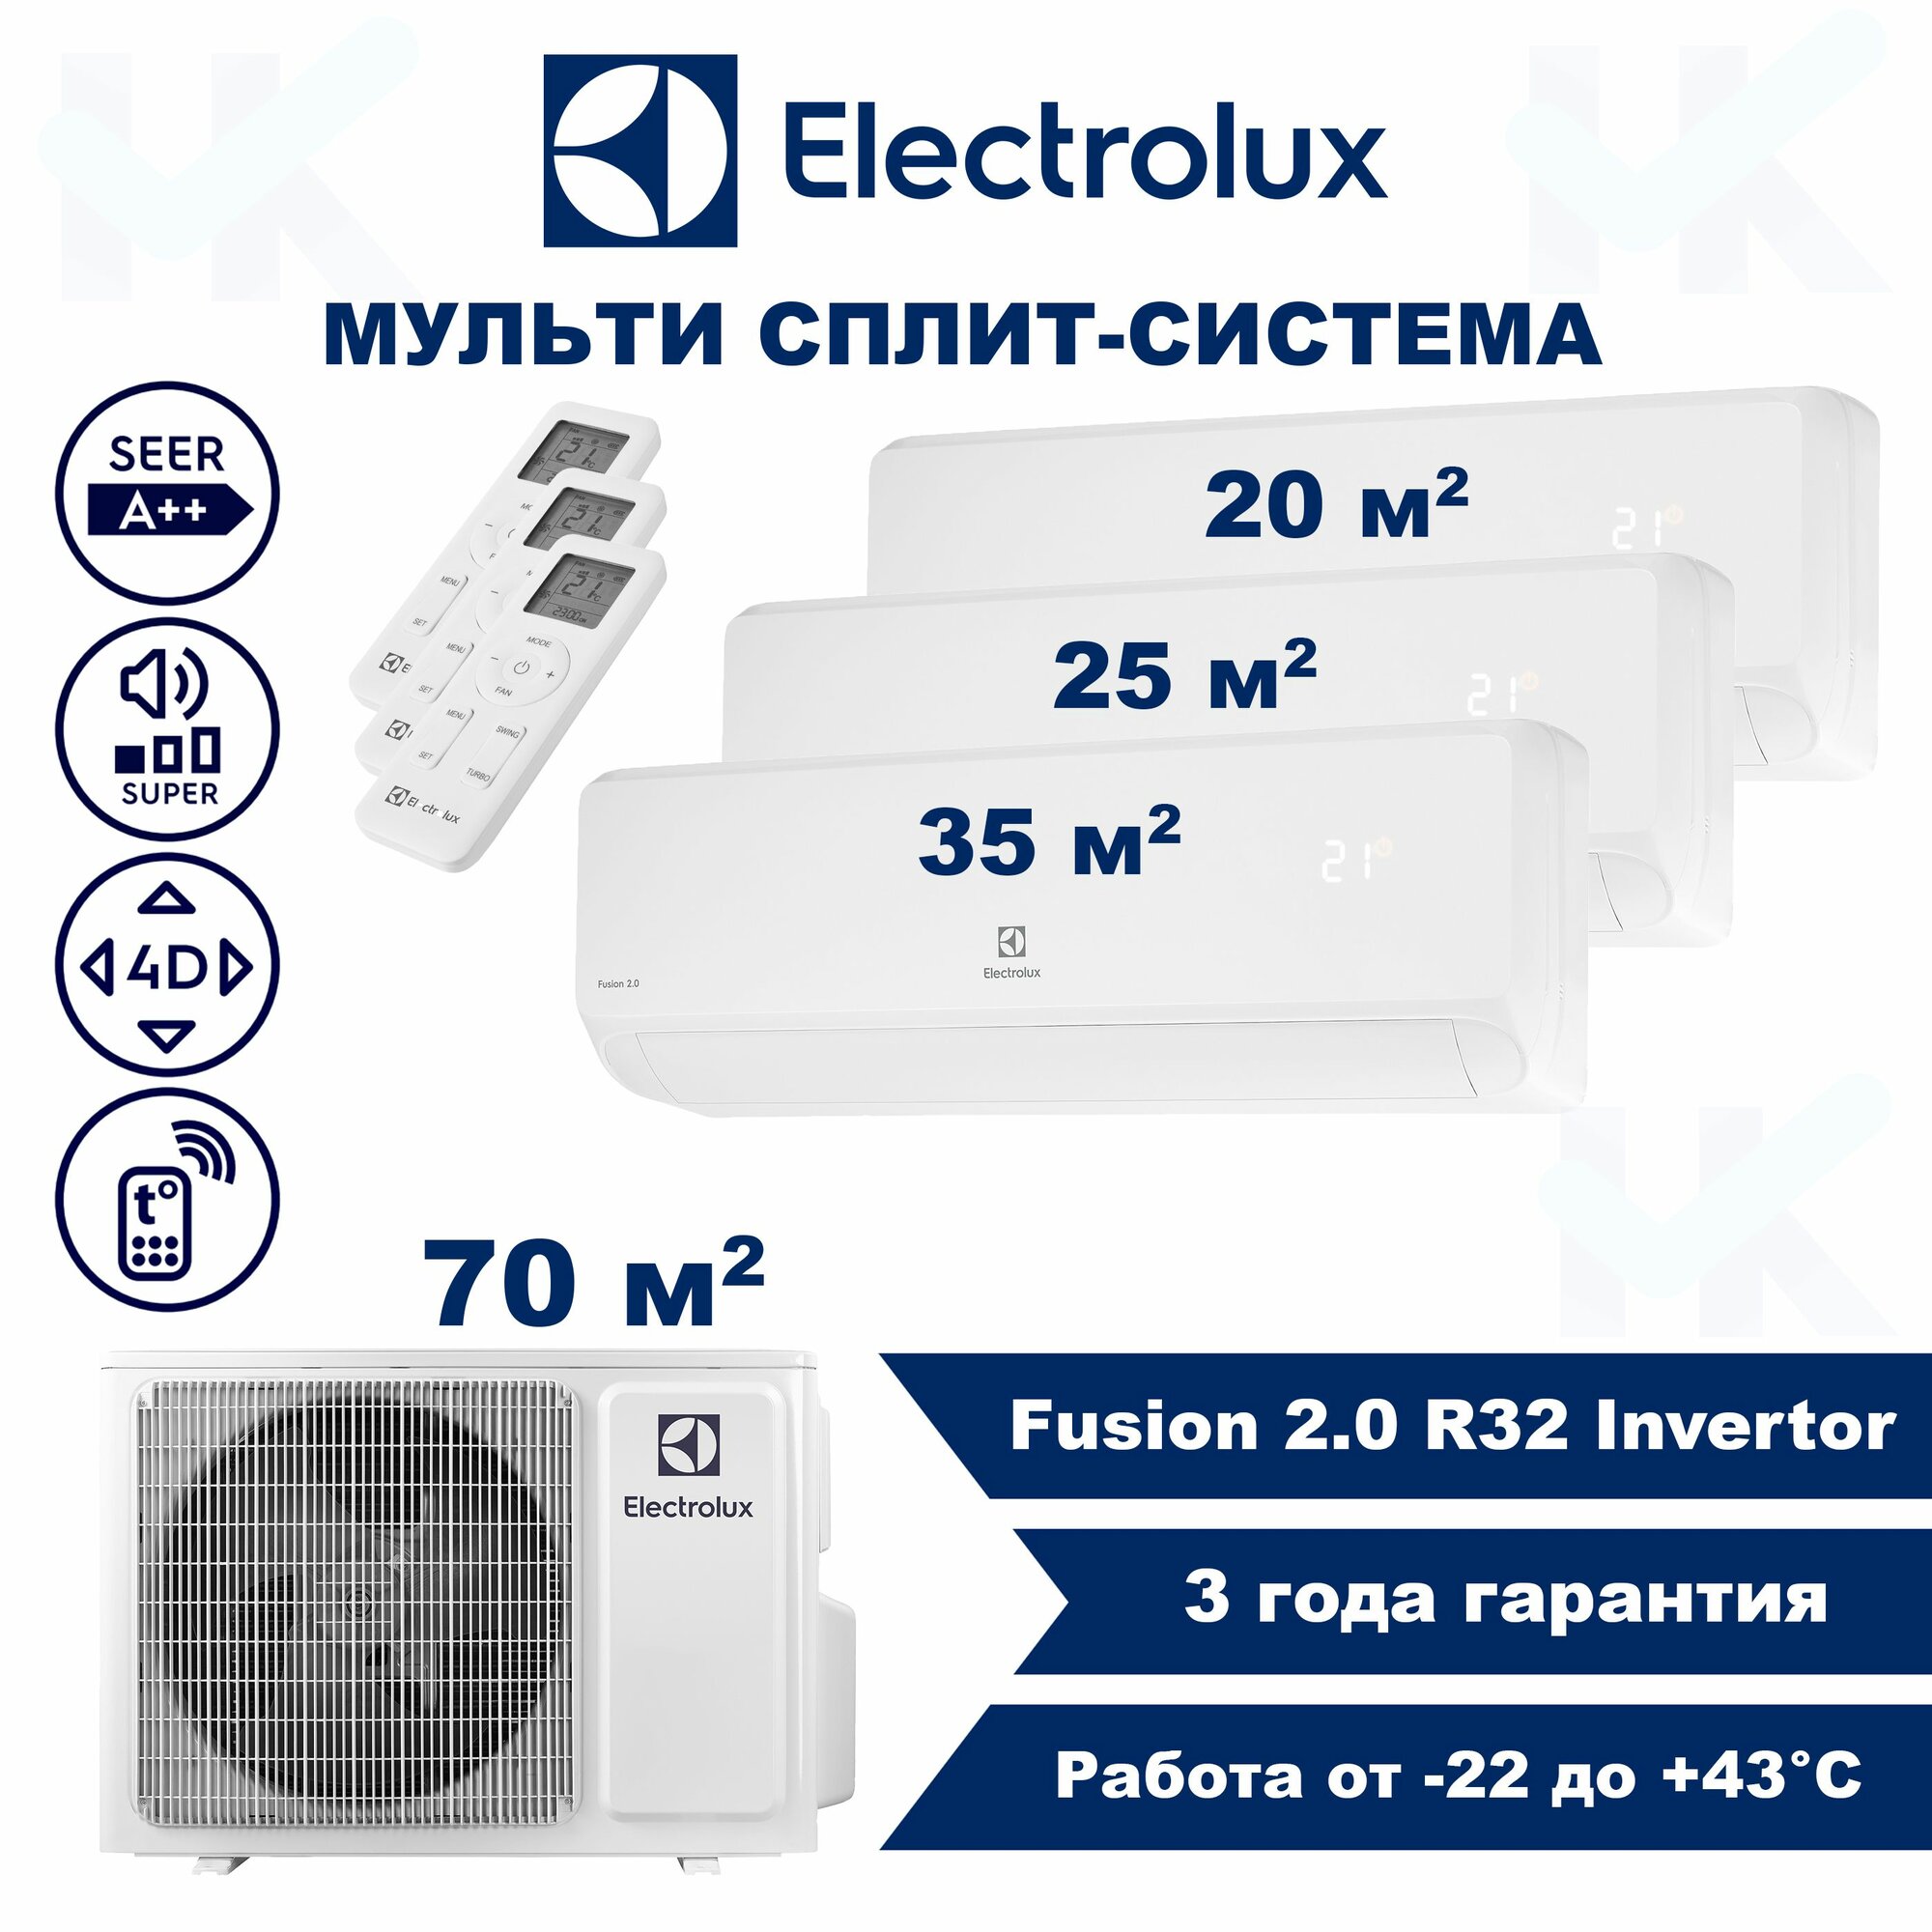 Инверторная мульти сплит-система ELECTROLUX серии Fusion 2.0 на 3 комнаты (20 м2 + 25 м2 + 35 м2) с наружным блоком 70 м2, Попеременная работа